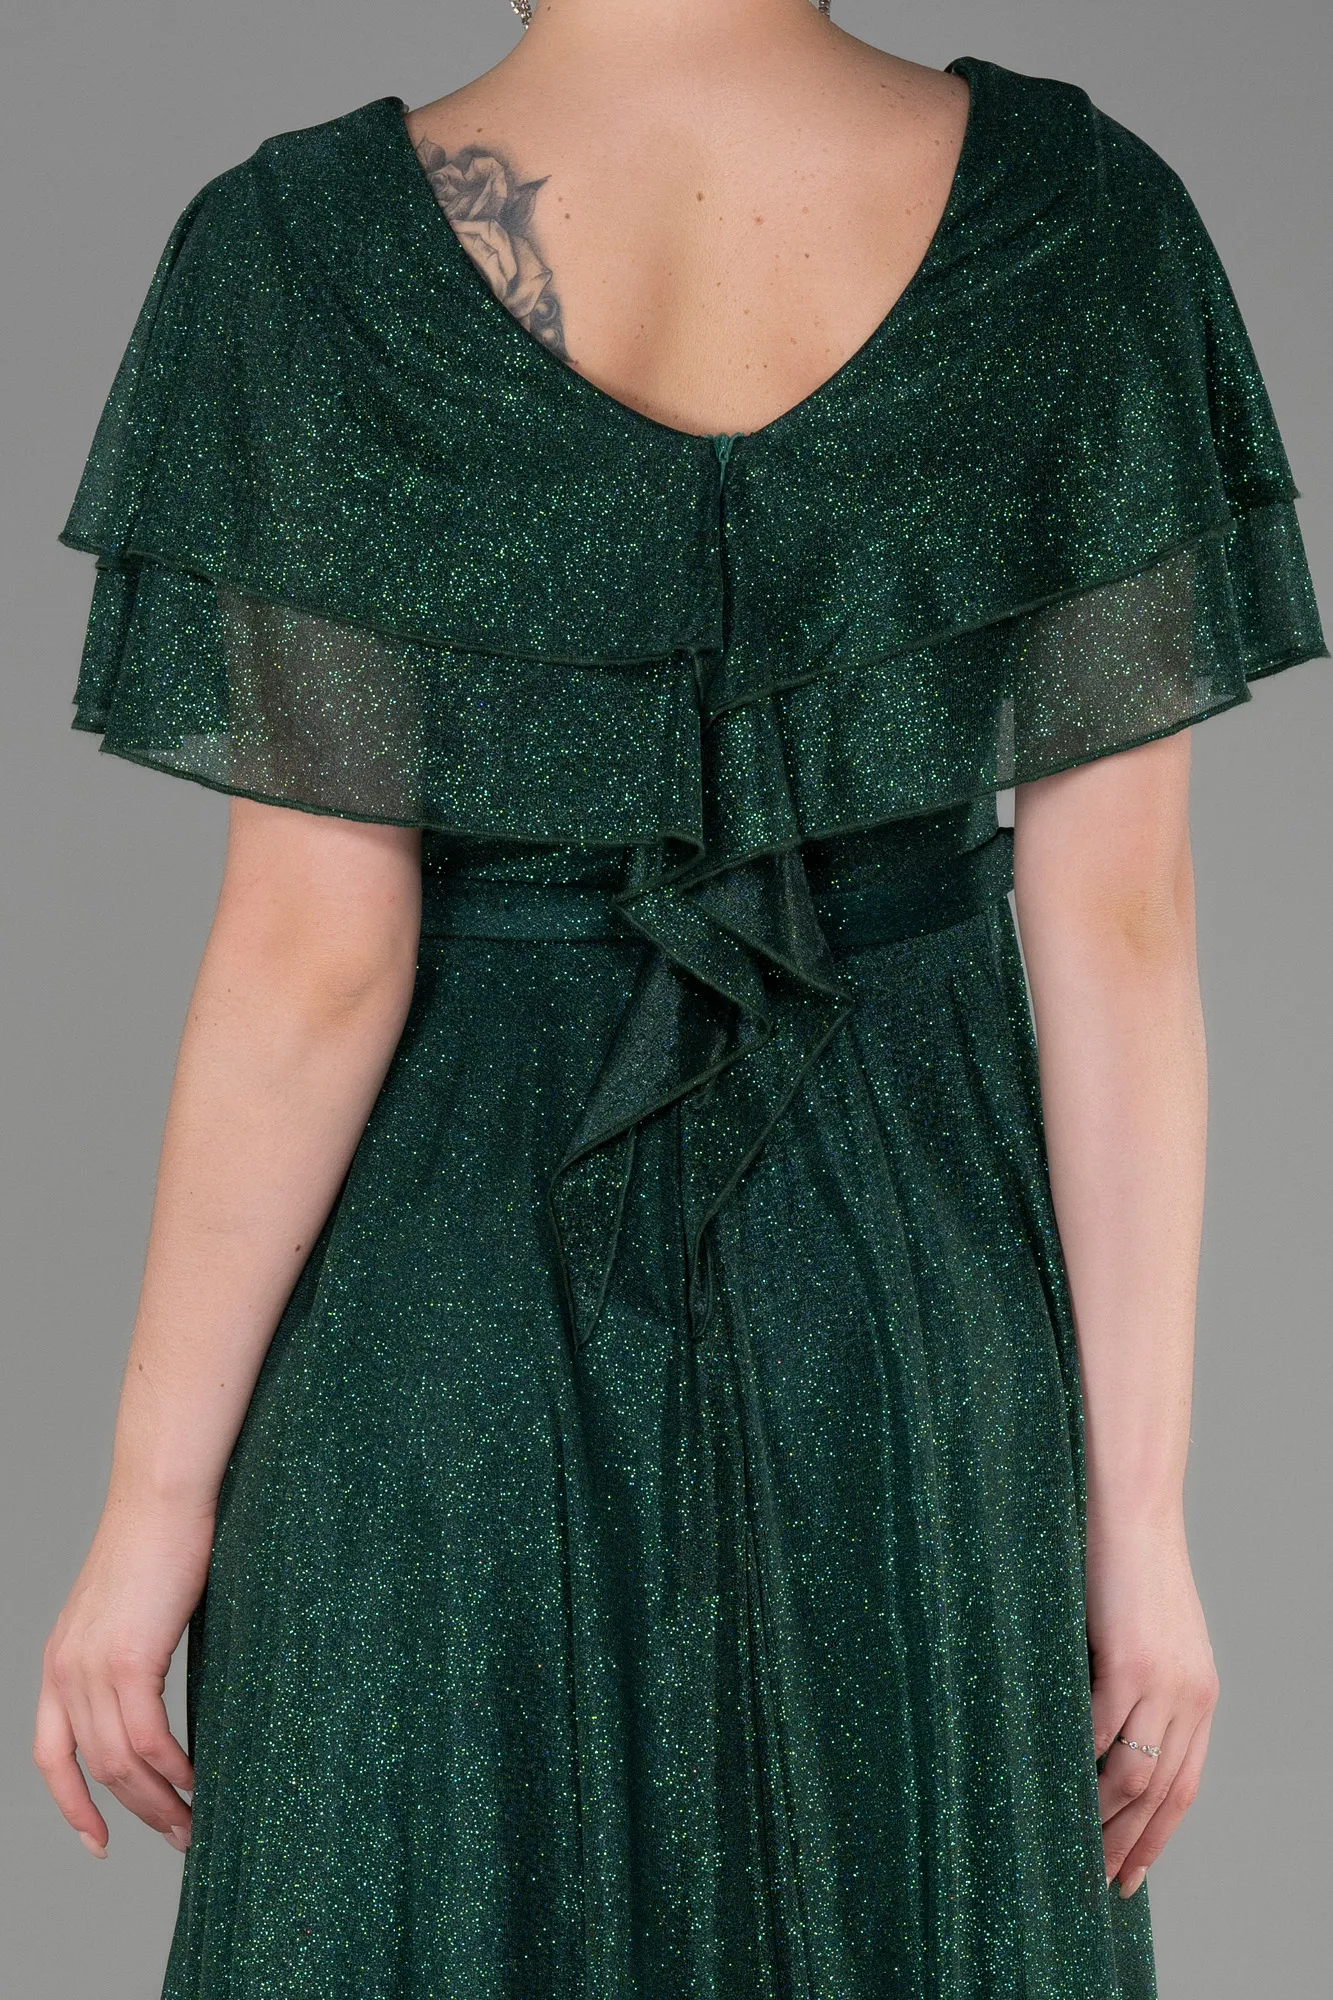 Emerald Green-Long Evening Dress ABU3313